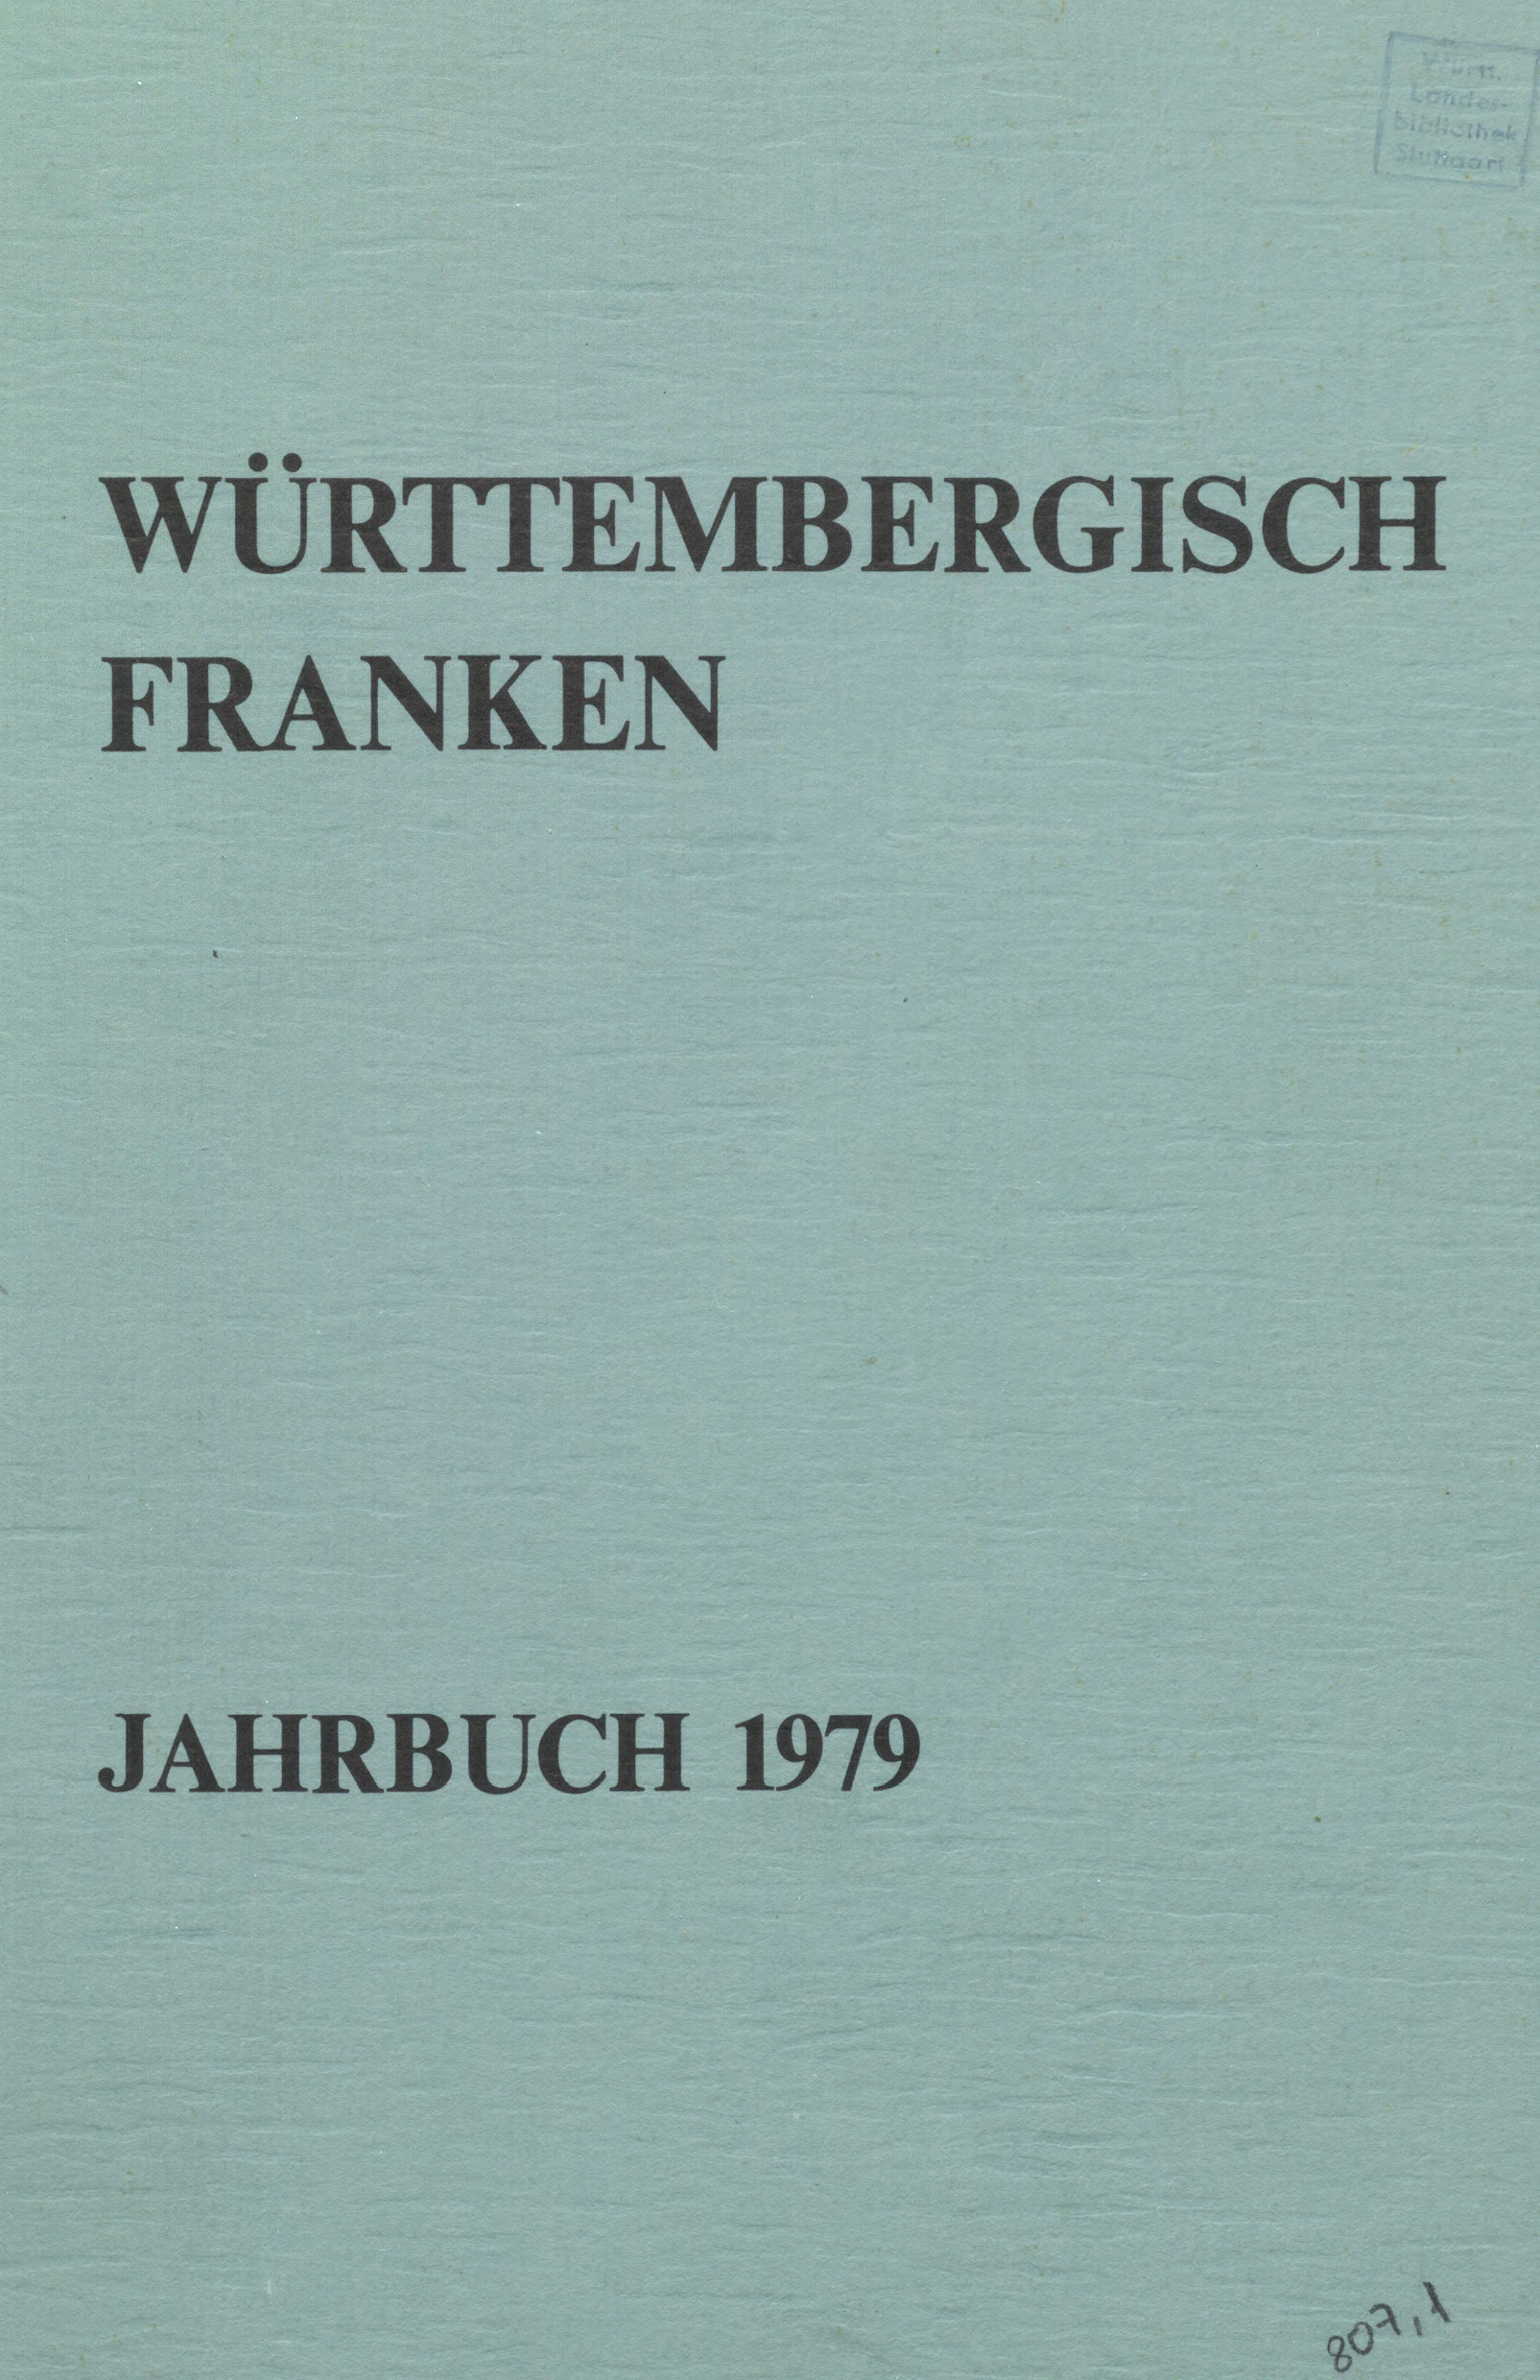                     Ansehen Bd. 63 (1979): Württembergisch Franken
                